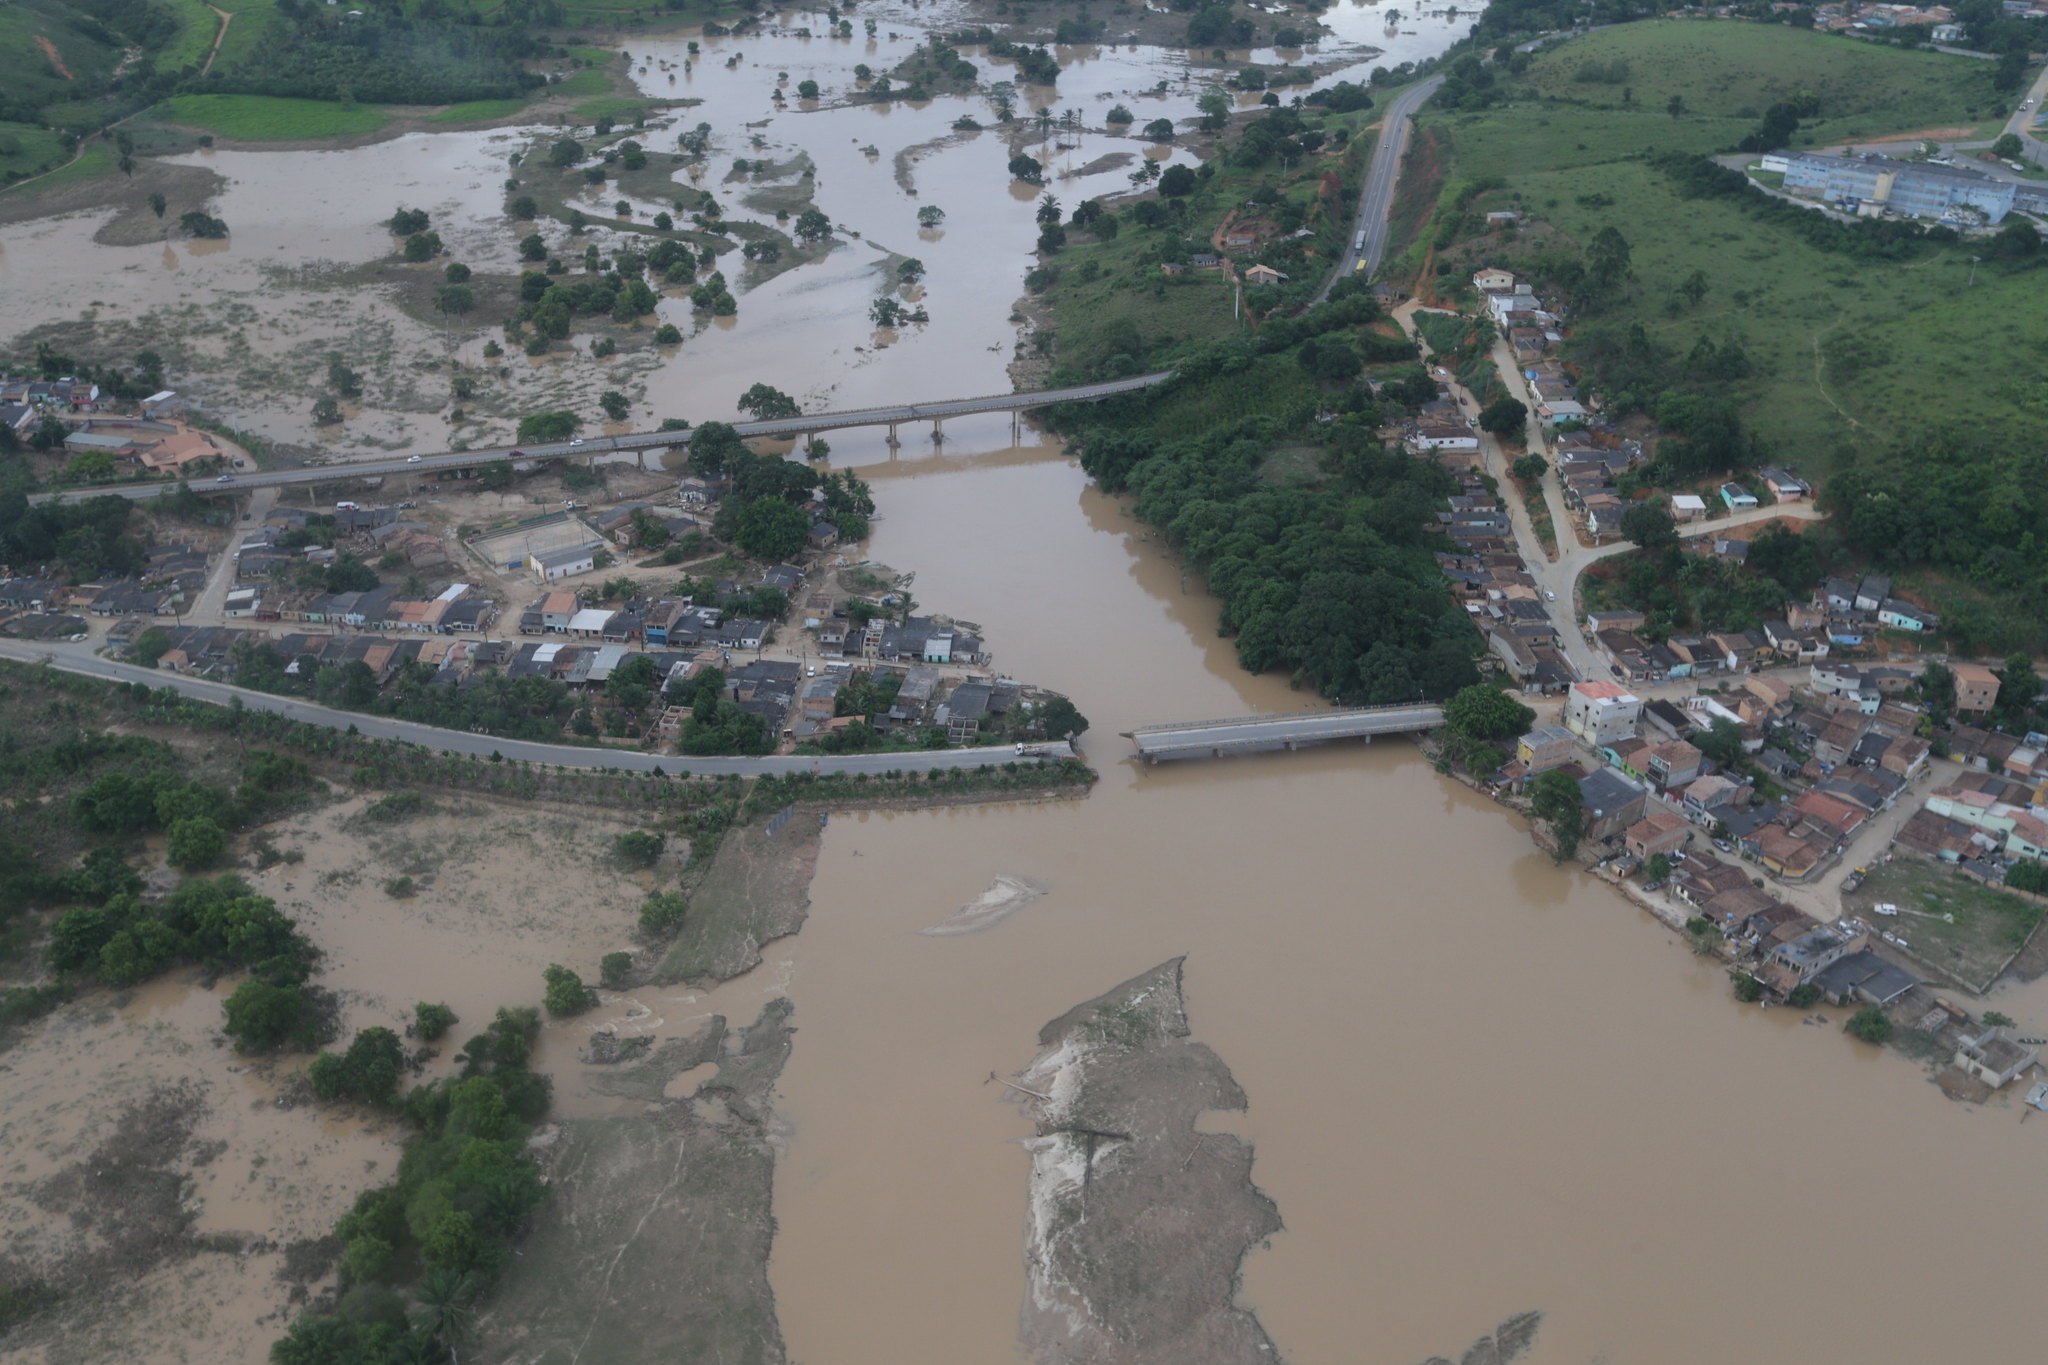 Ponte destruída na submersa cidade de Itamaraju, no sul da Bahia: enchentes na região na lista de desastres provocadas pela crise climática em 2021 (Foto: Manu Dias/Governo da Bahia)